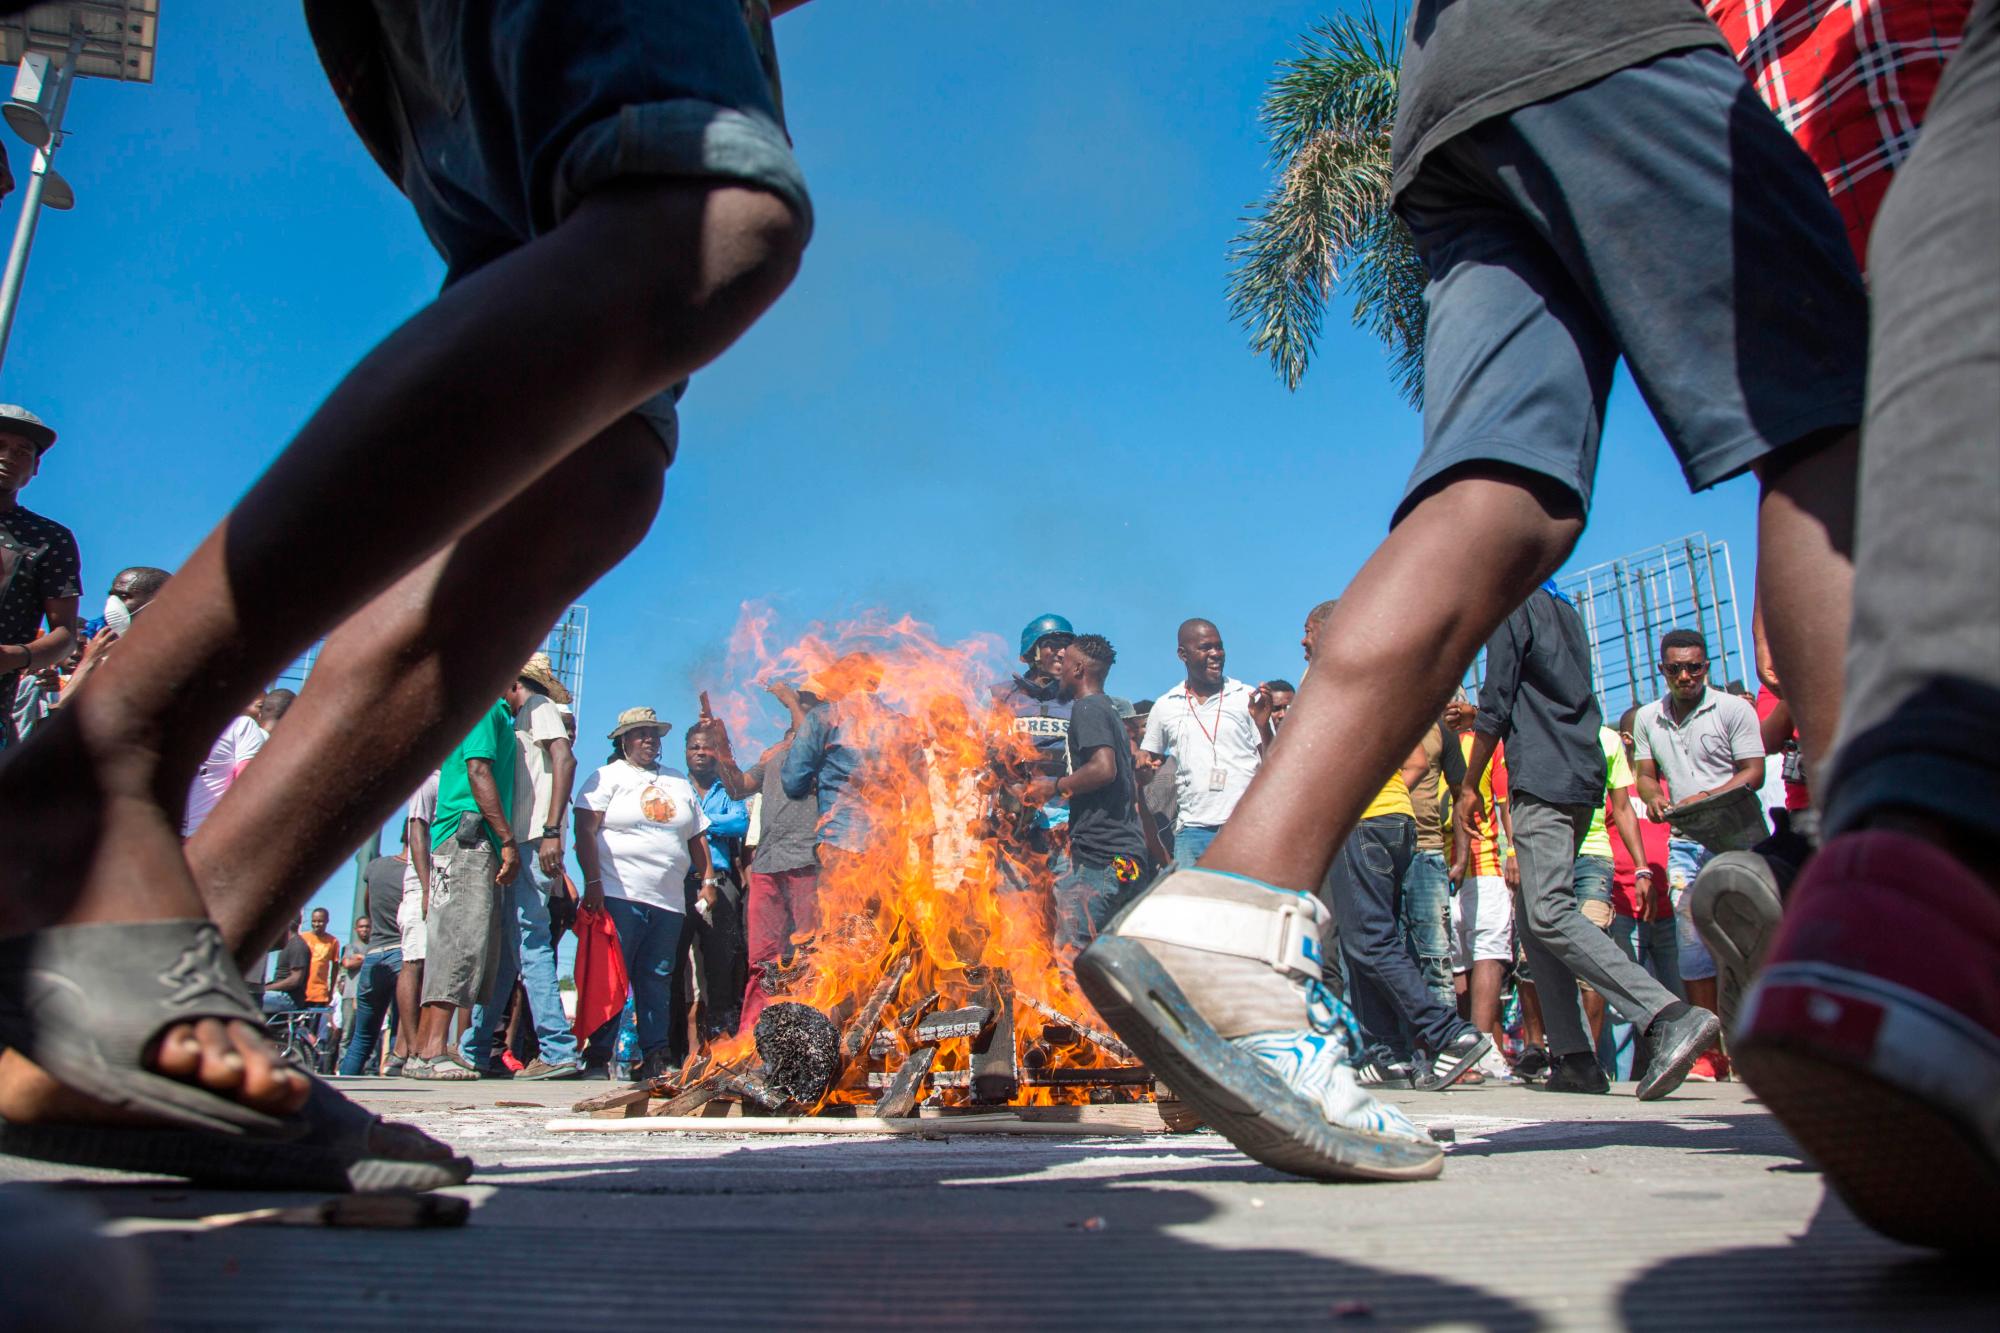 Hombres bailan alrededor de una barricada durante una protesta, en Puerto Príncipe (Haití) hoy, domingo 18 de noviembre de 2018. Miles de haitianos salieron hoy a las calles para participar en una nueva protesta nacional contra la corrupción y la impunidad, que ha dejado al menos dos muertos y varios heridos.